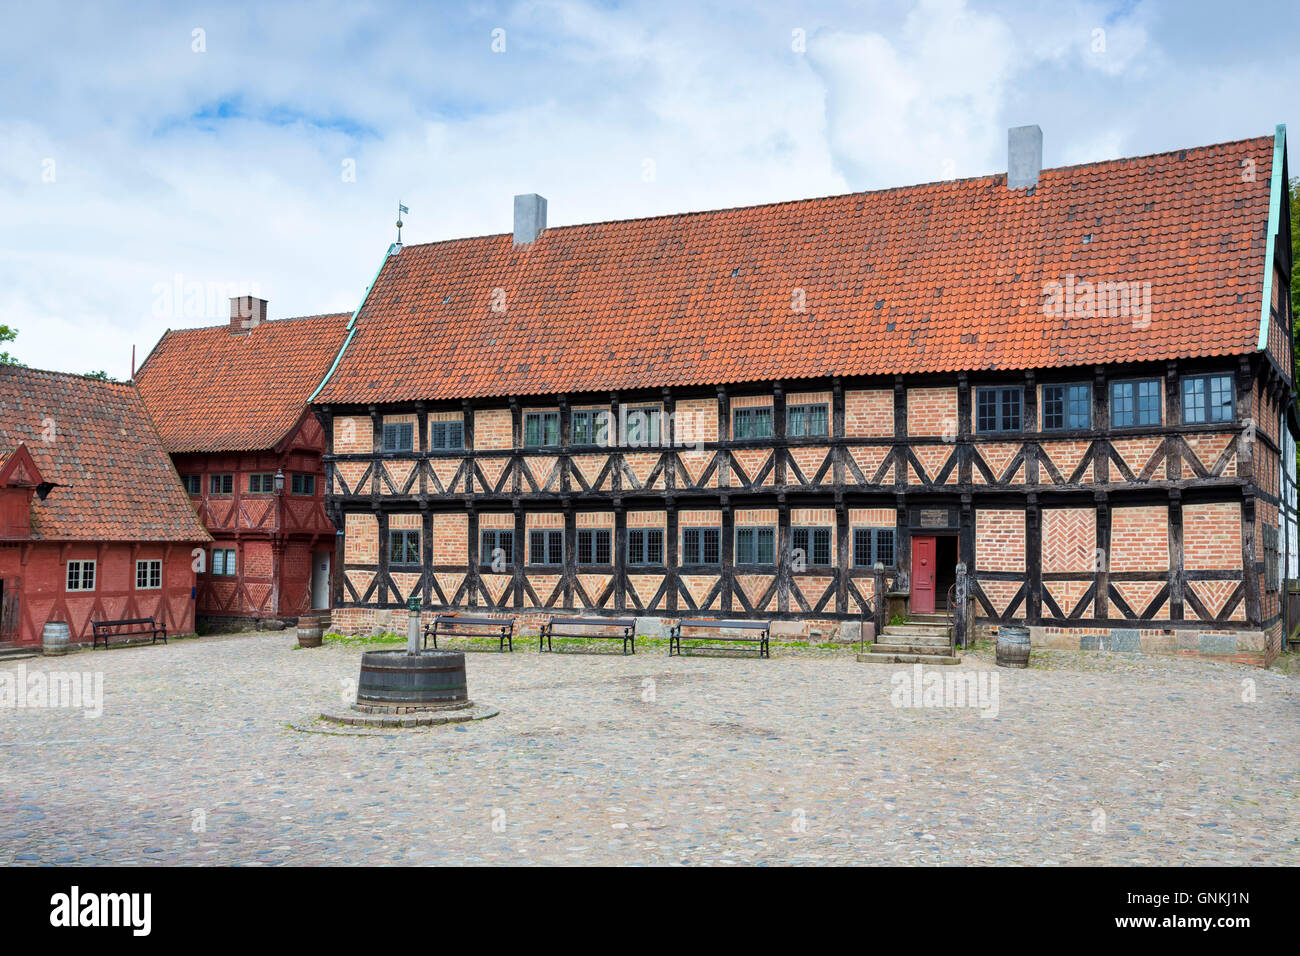 Maison du maire et Town Square à Den Gamle By, la vieille ville, le musée folklorique en plein air, d'Aarhus, Danemark, East Jutland Banque D'Images